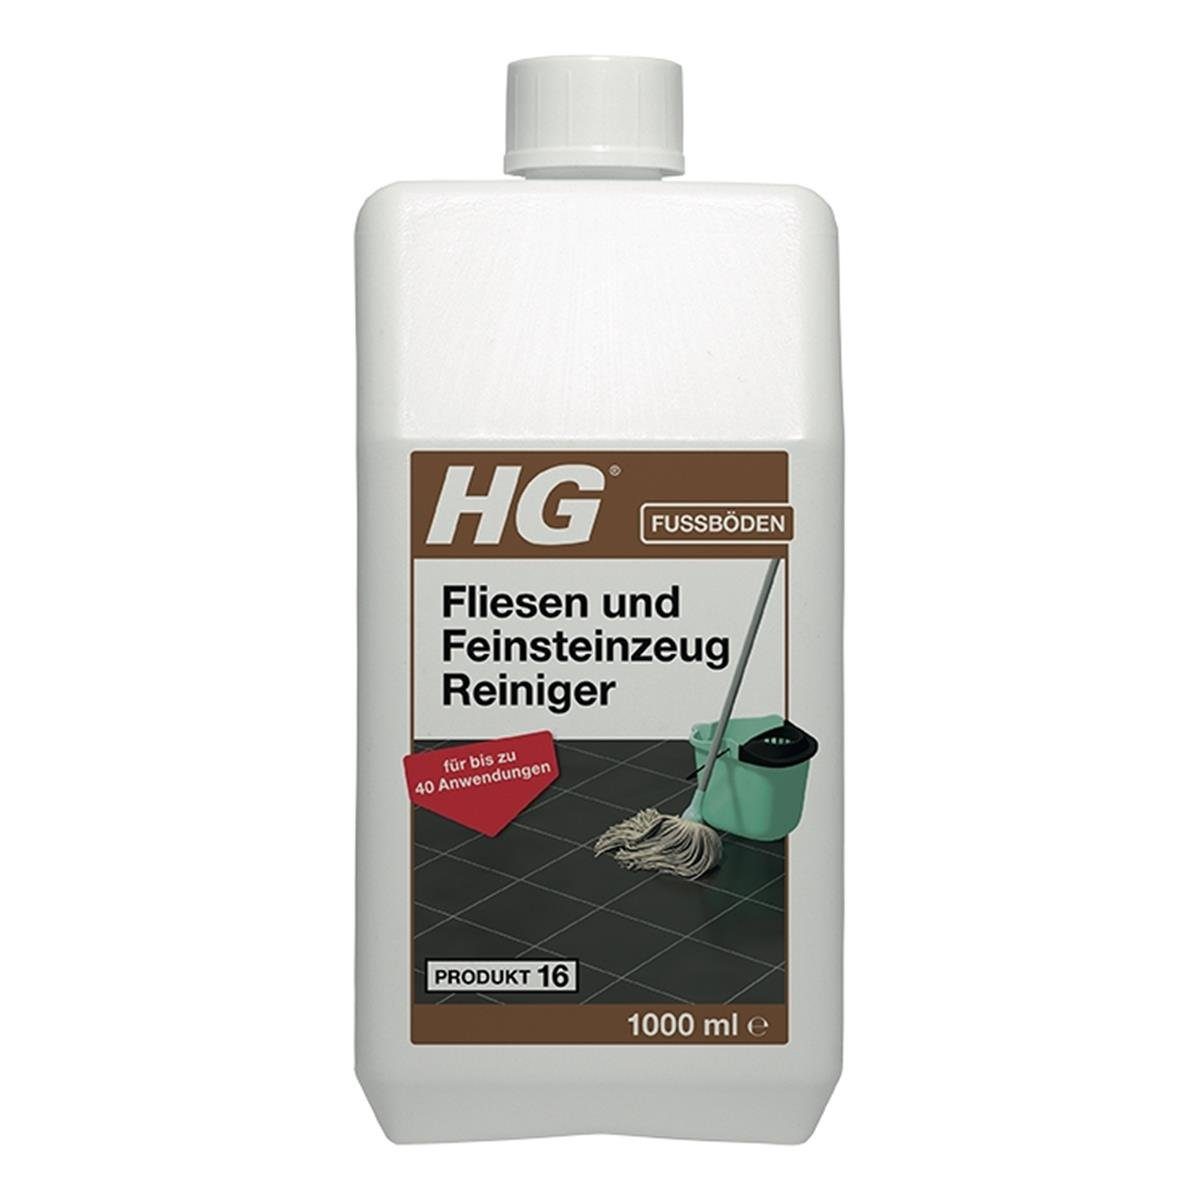 HG HG Fliesen und Feinsteinzeug Reiniger 1L (Produkt 16) (1er Pack) Fussbodenreiniger